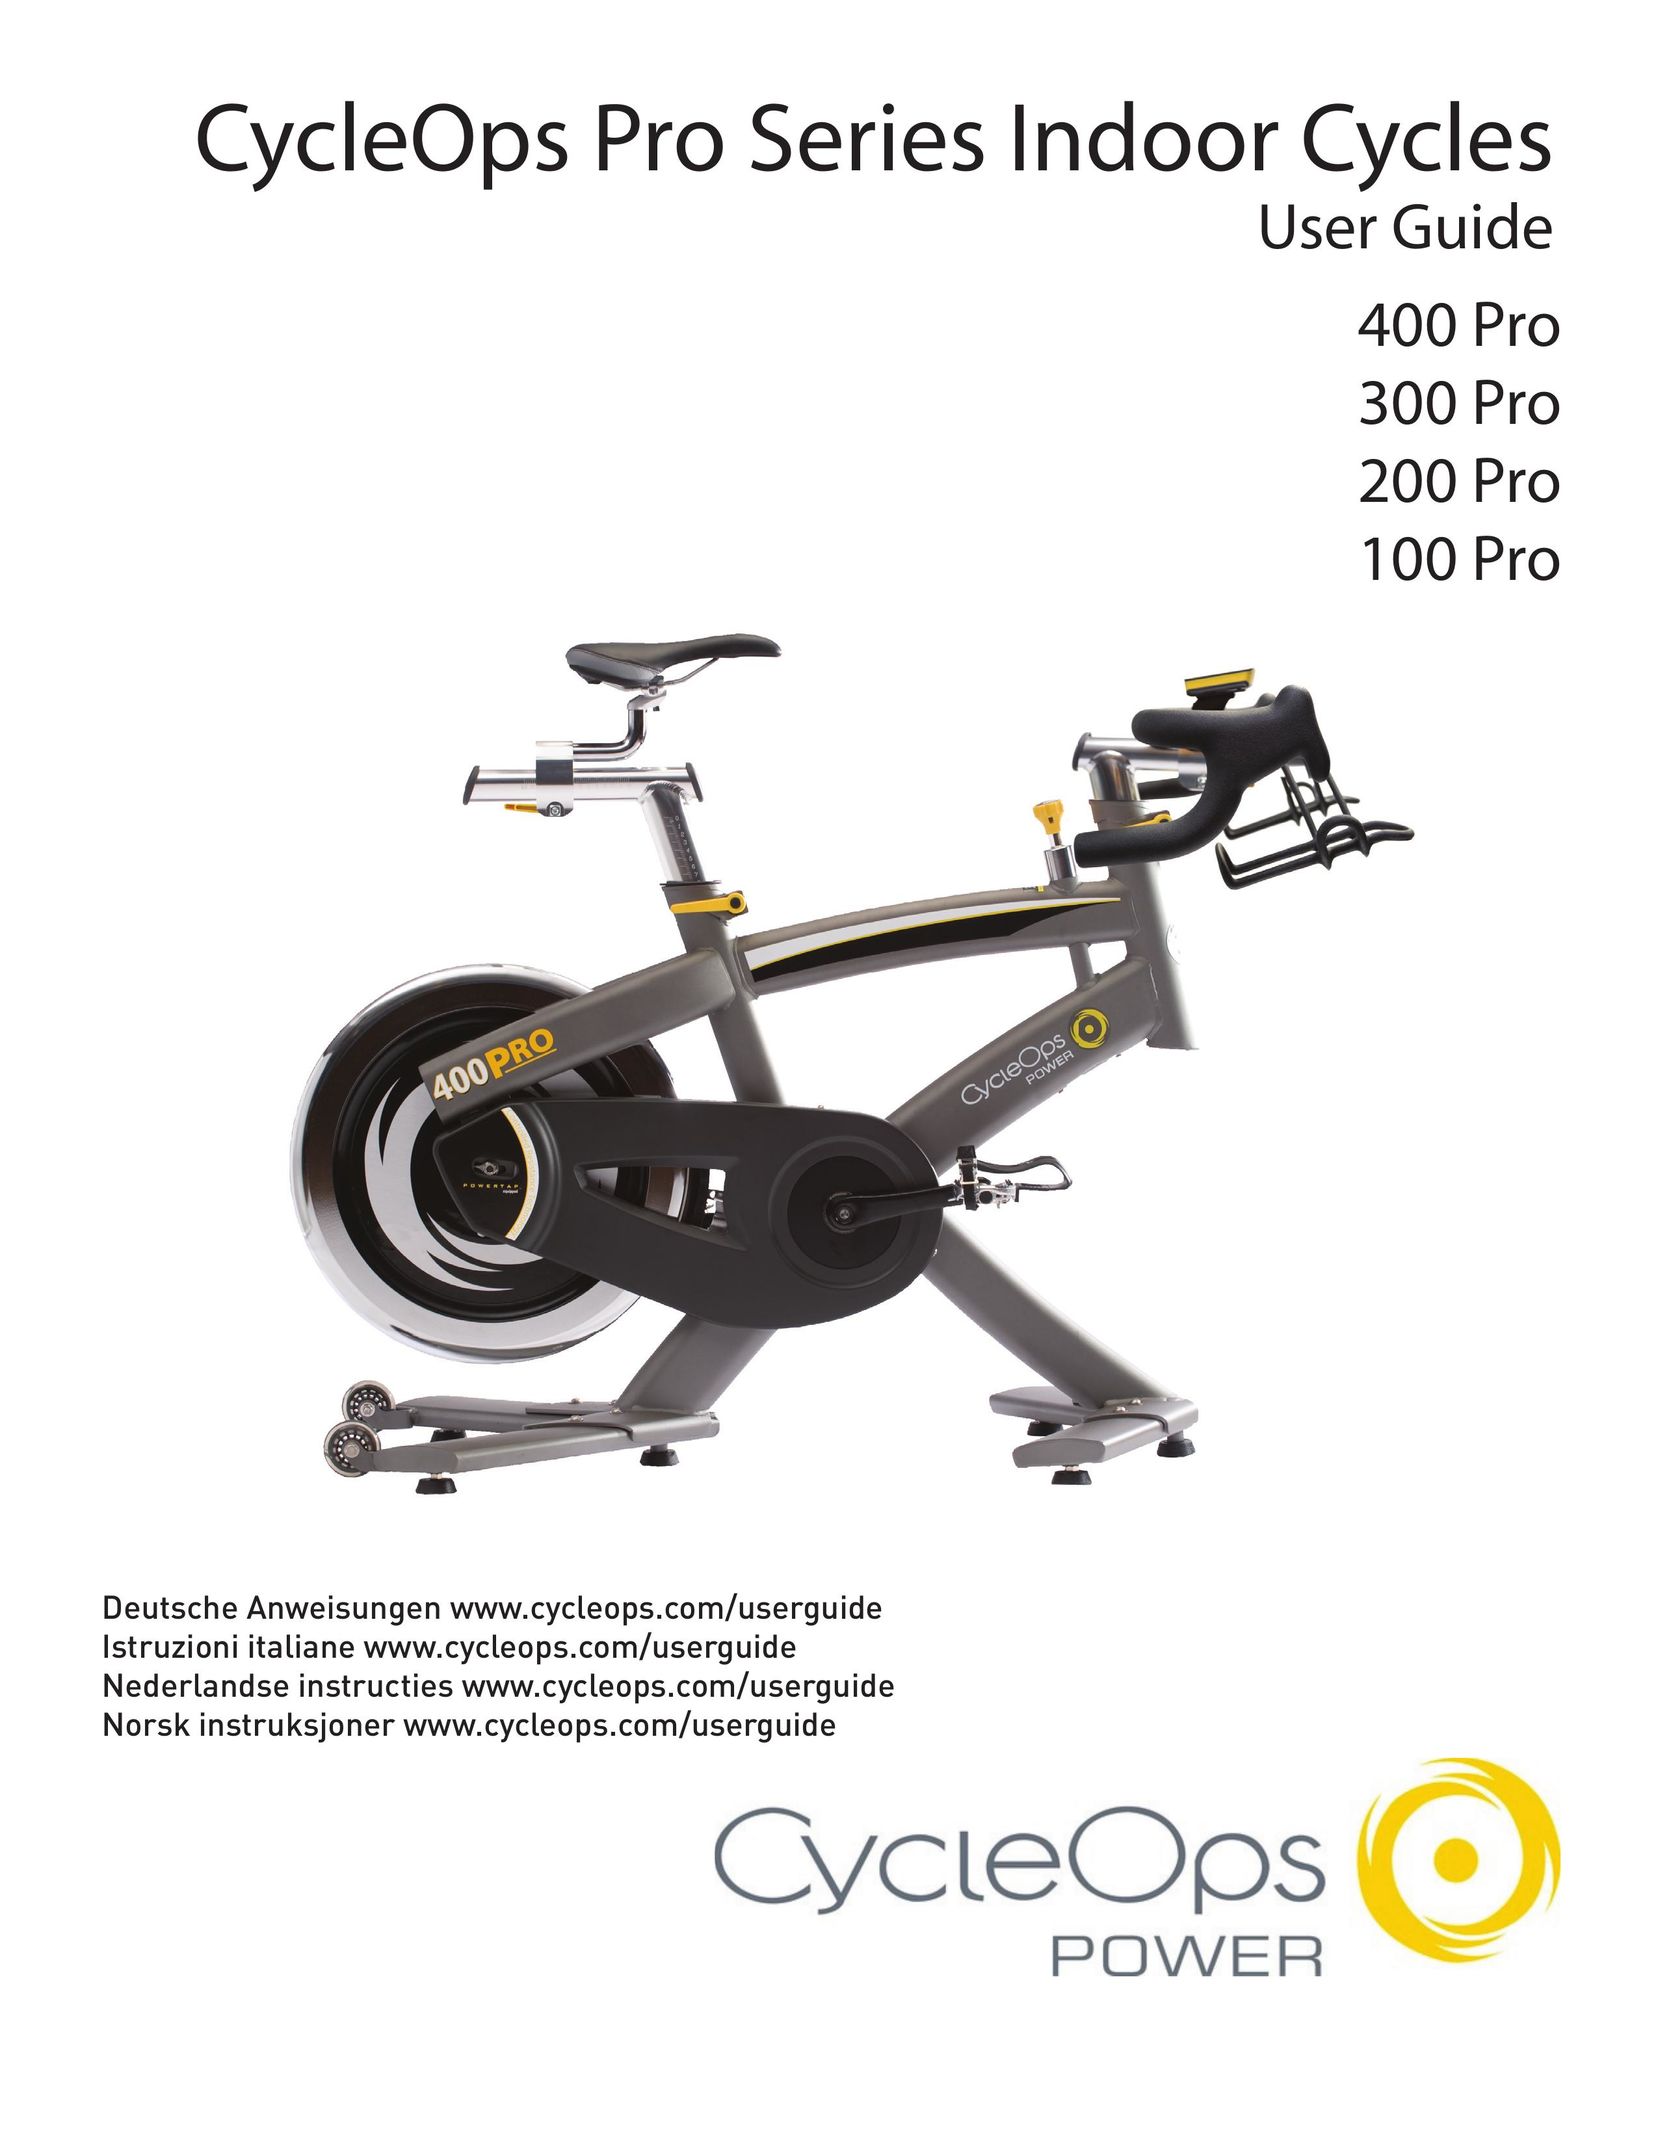 CycleOps 200 PRO Exercise Bike User Manual